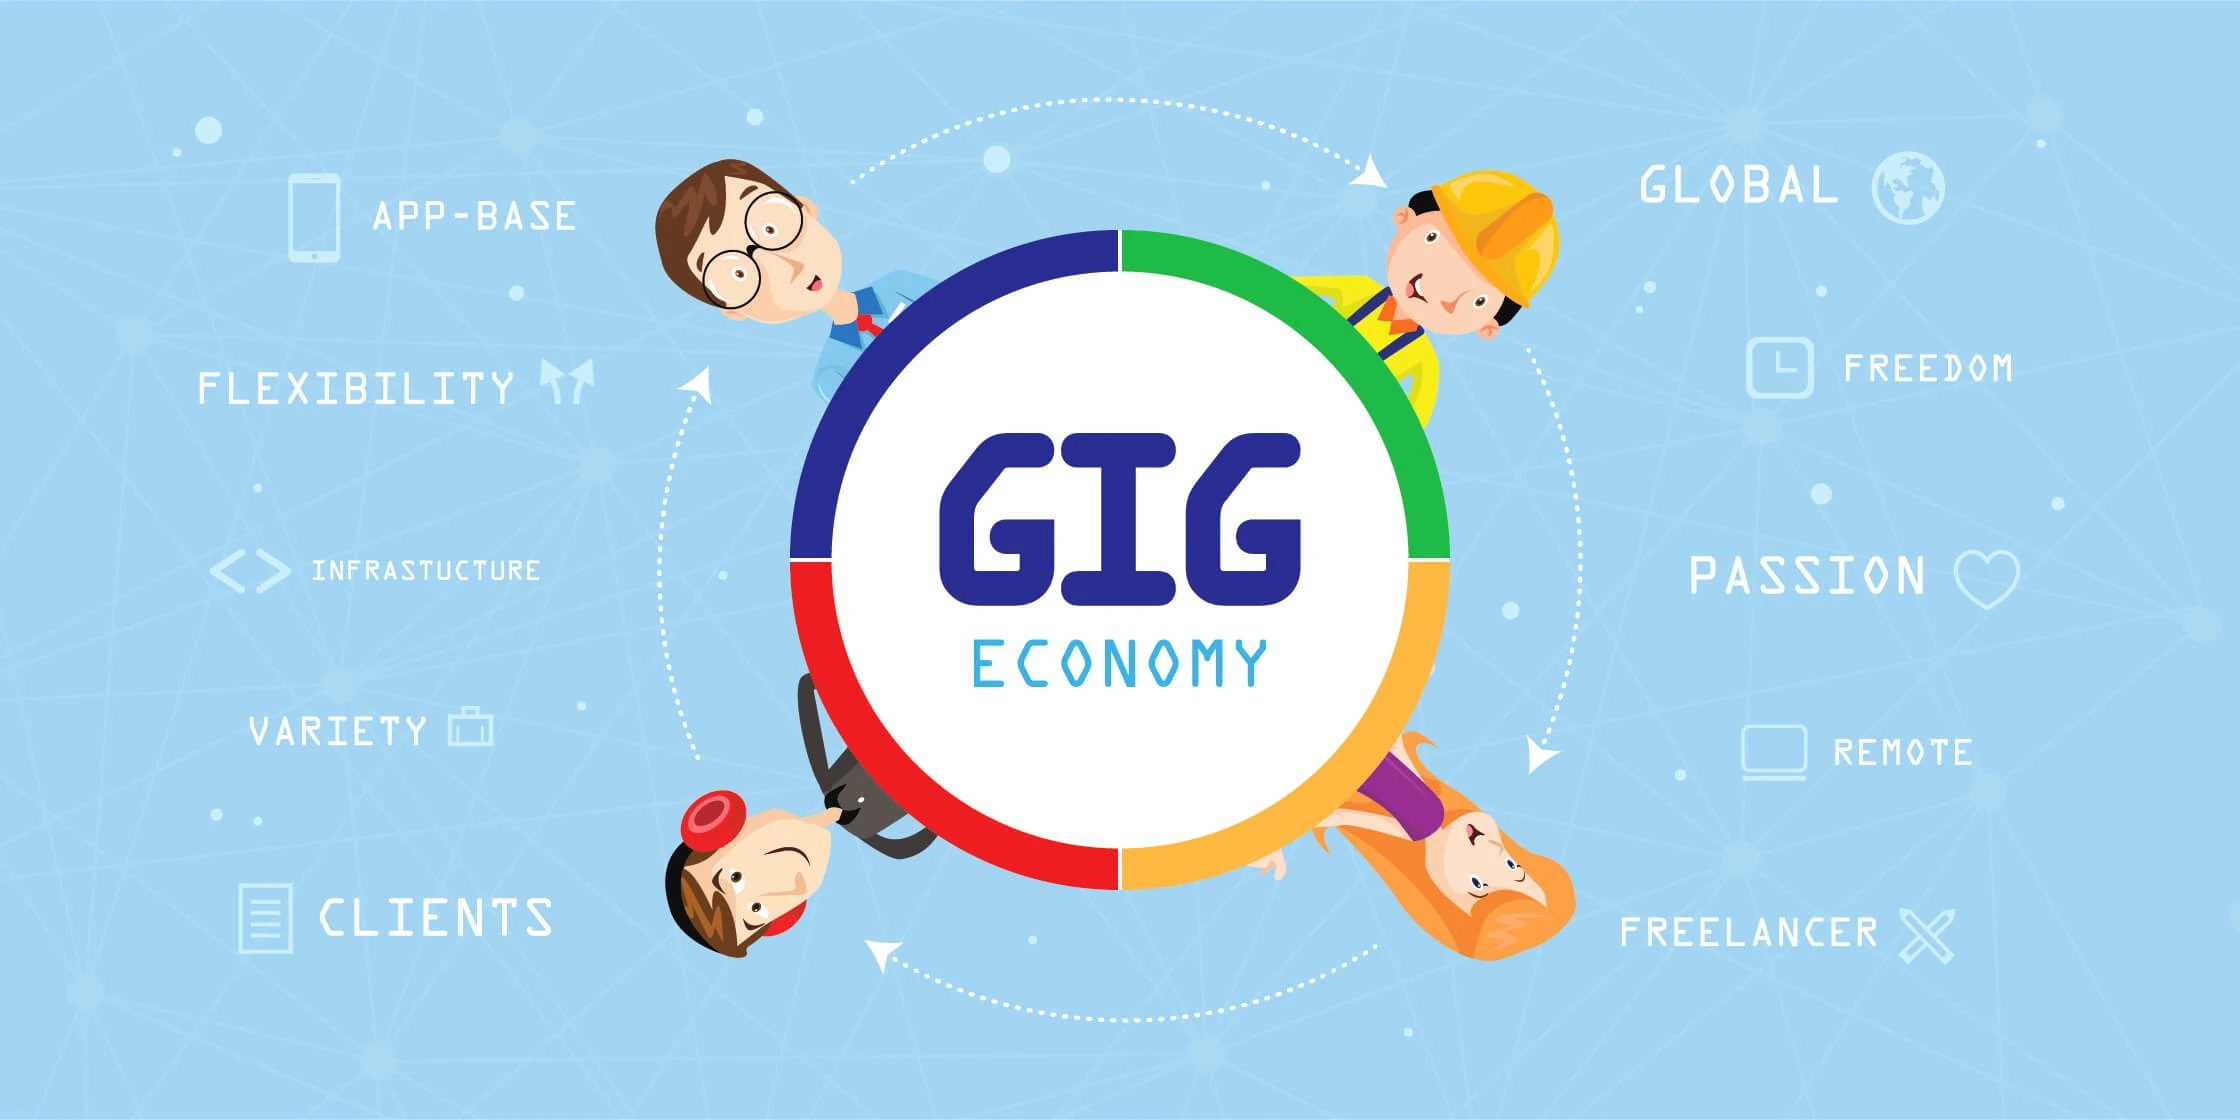 GIG Economy & Freelancer